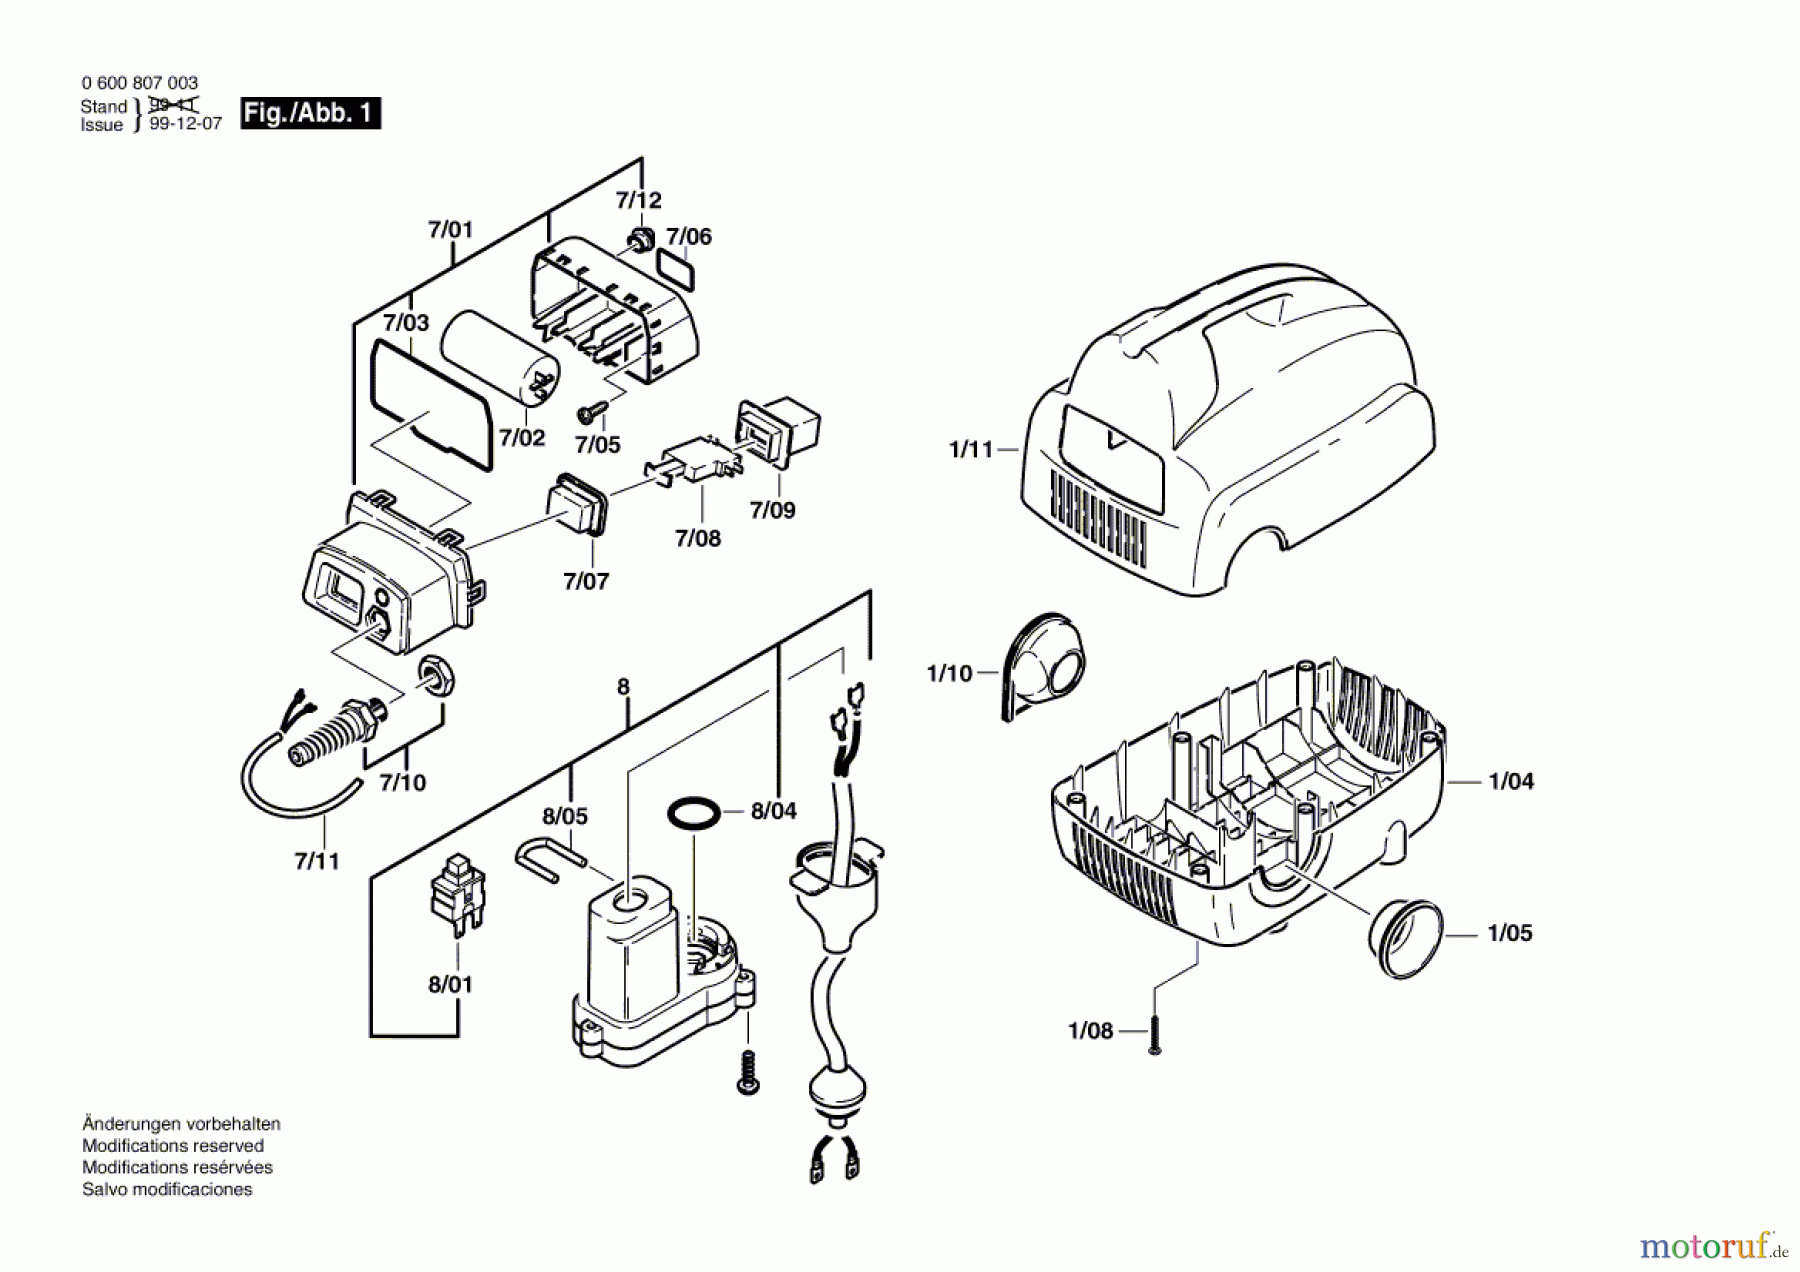  Bosch Wassertechnik Hochdruckreiniger AHR 1100 AS Seite 1